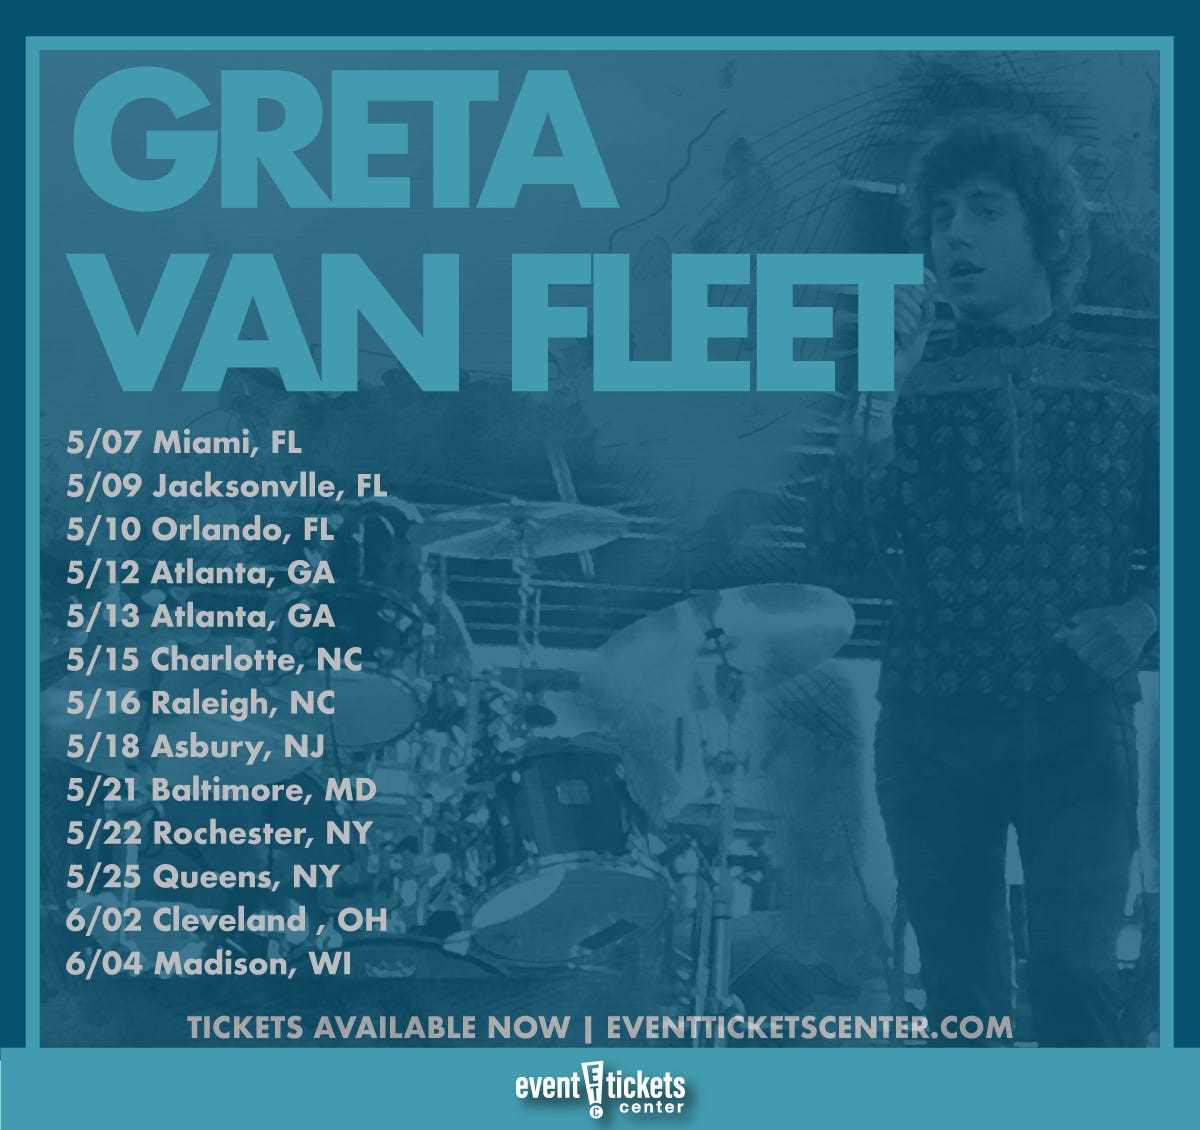 greta van fleet tour schedule 2019